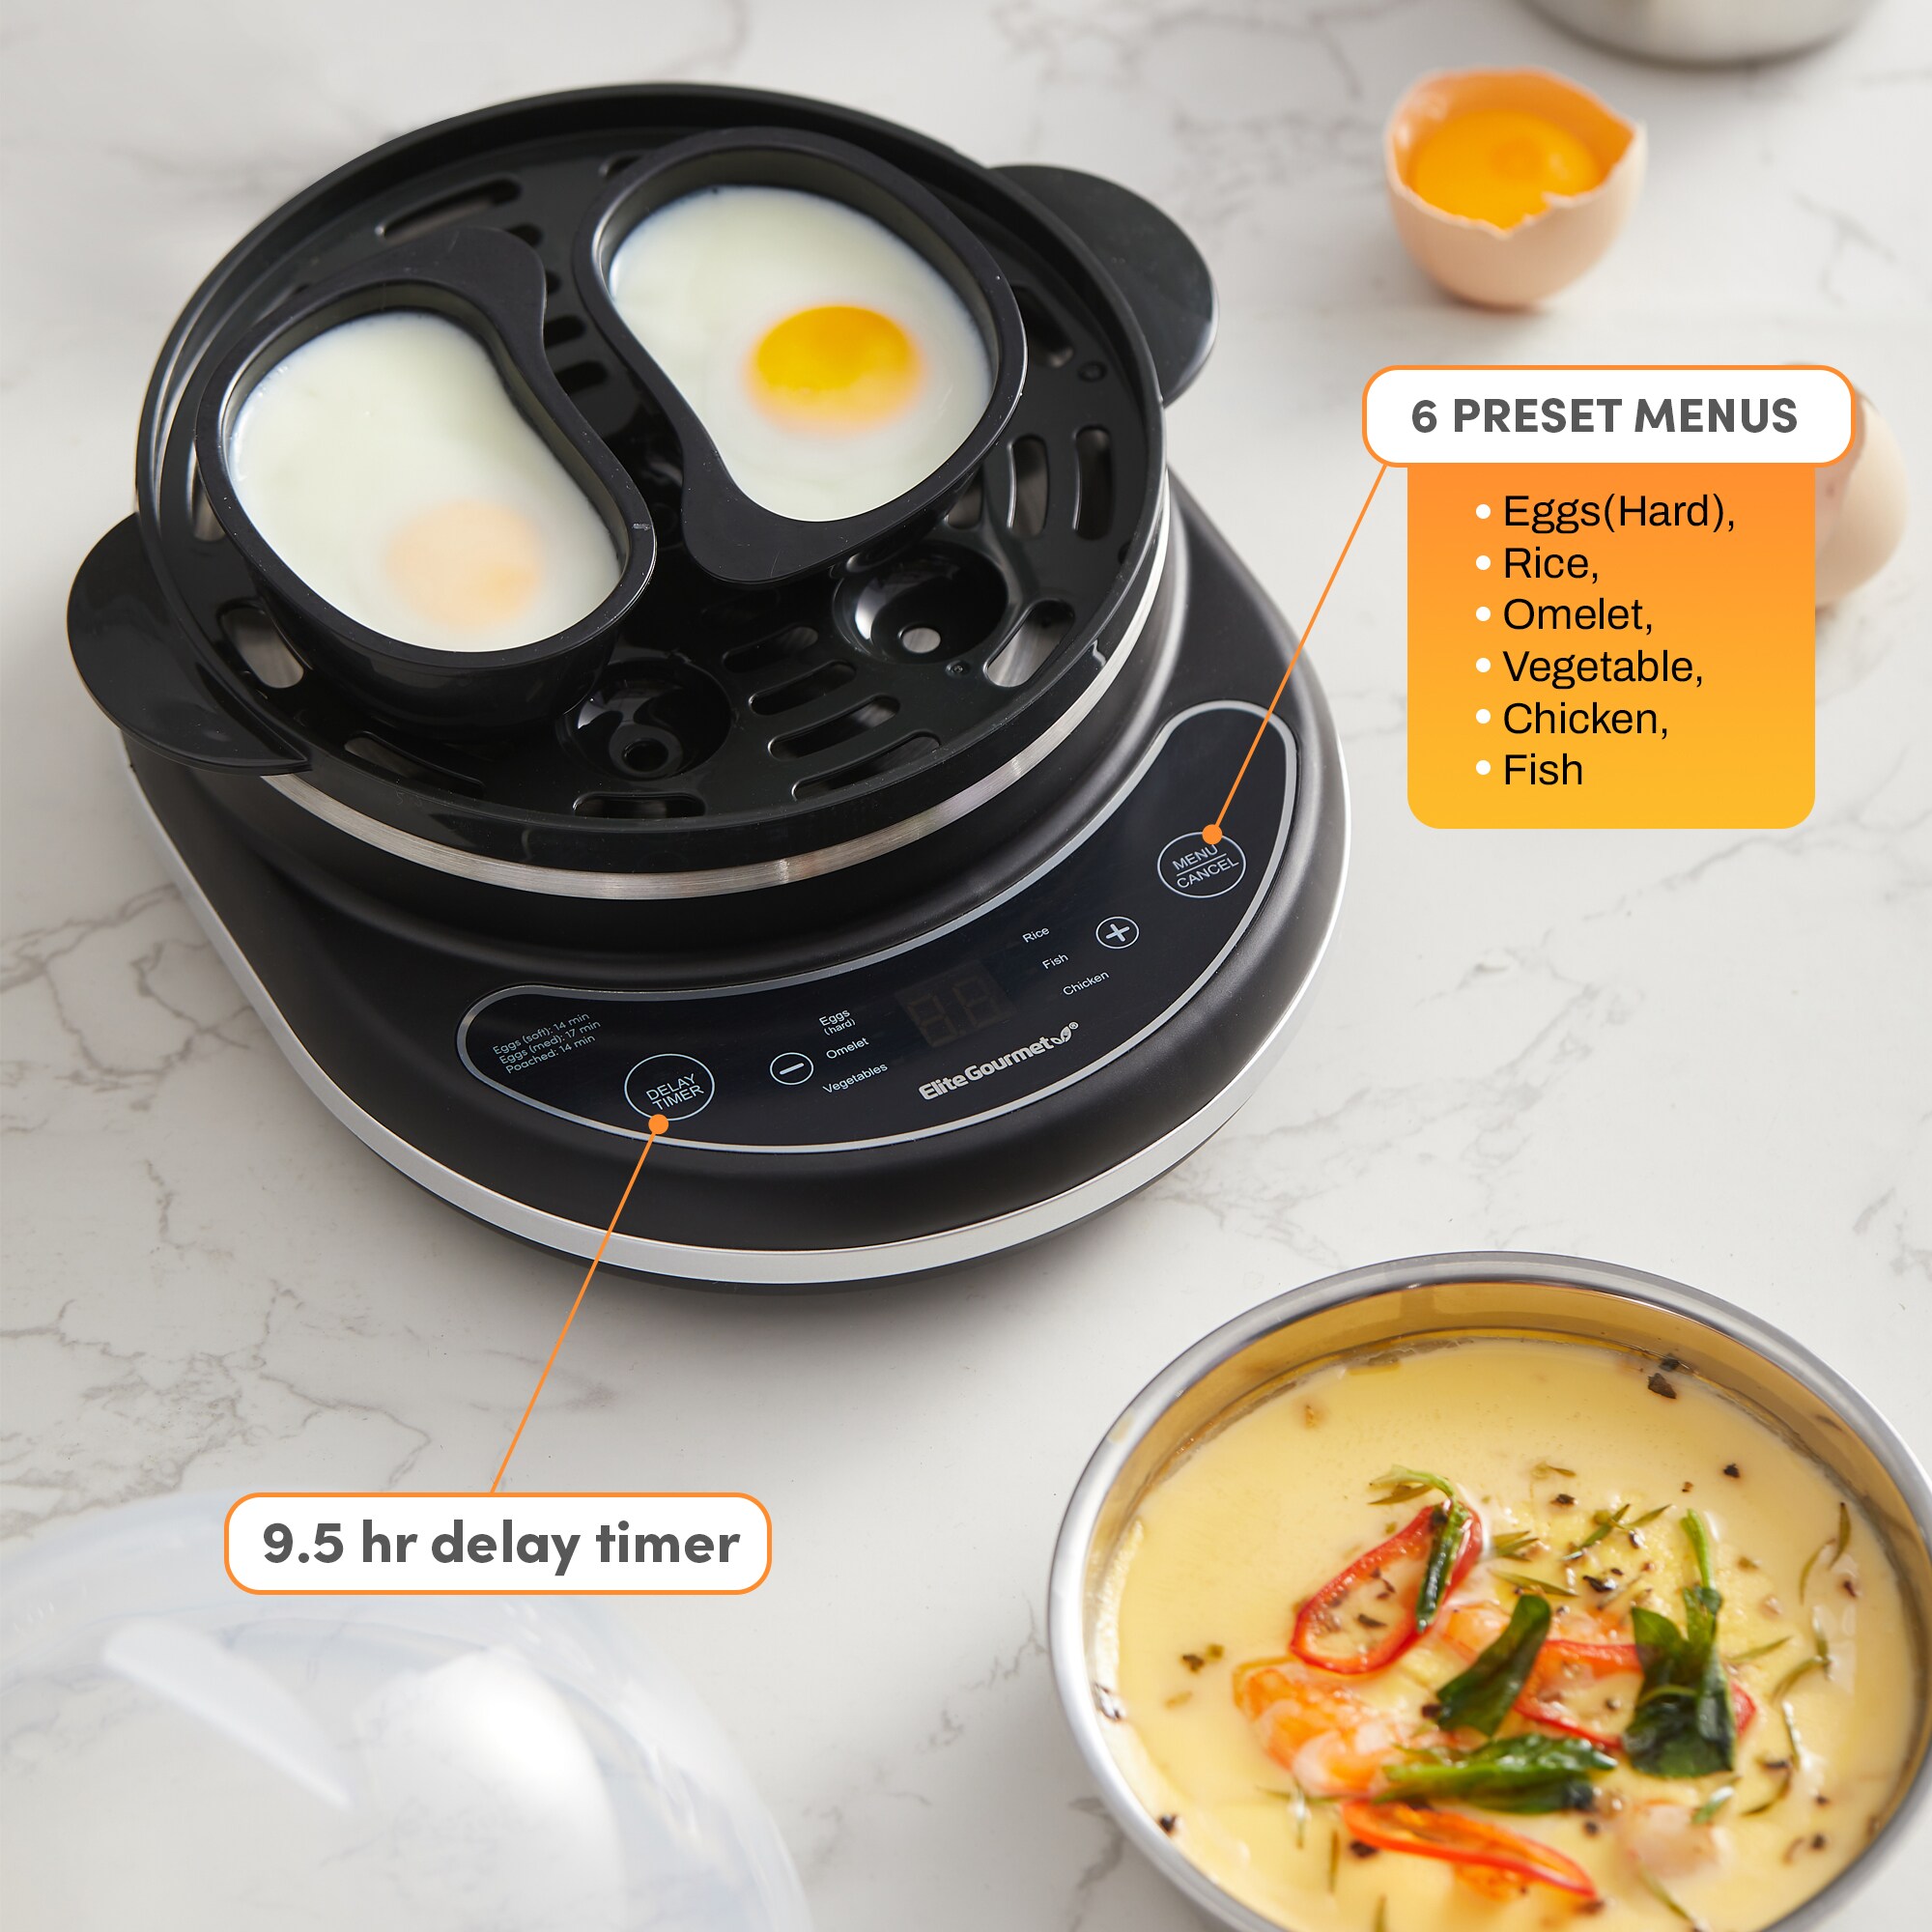 Elite Gourmet Programmable 2 Tier Egg Cooker Steamer, Elite Gourmet 14 egg  easy cooker review